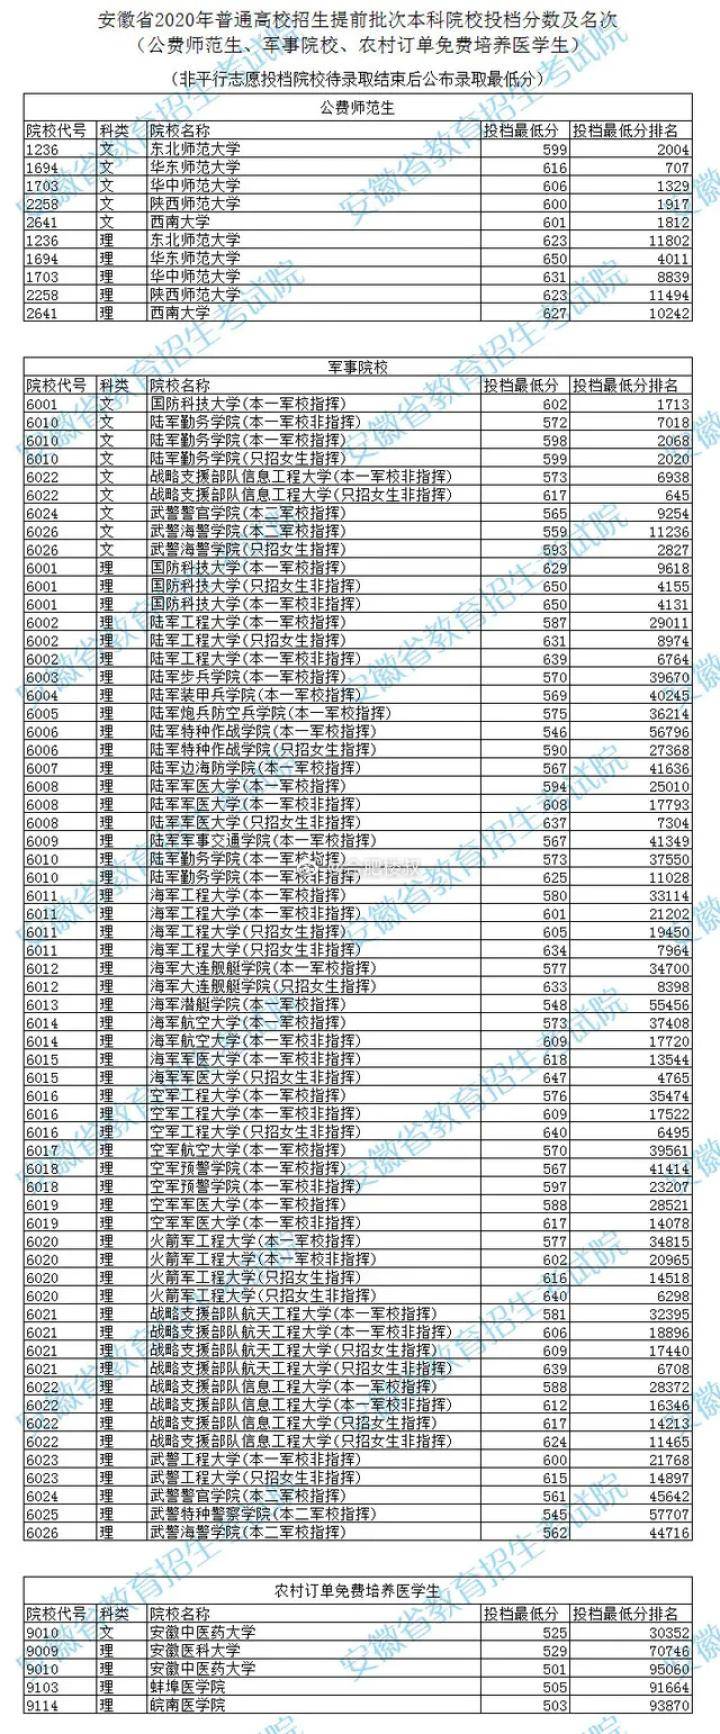 2020理科455安徽排名排名_2020安徽高考一本理科录取人数、分数线、排名总